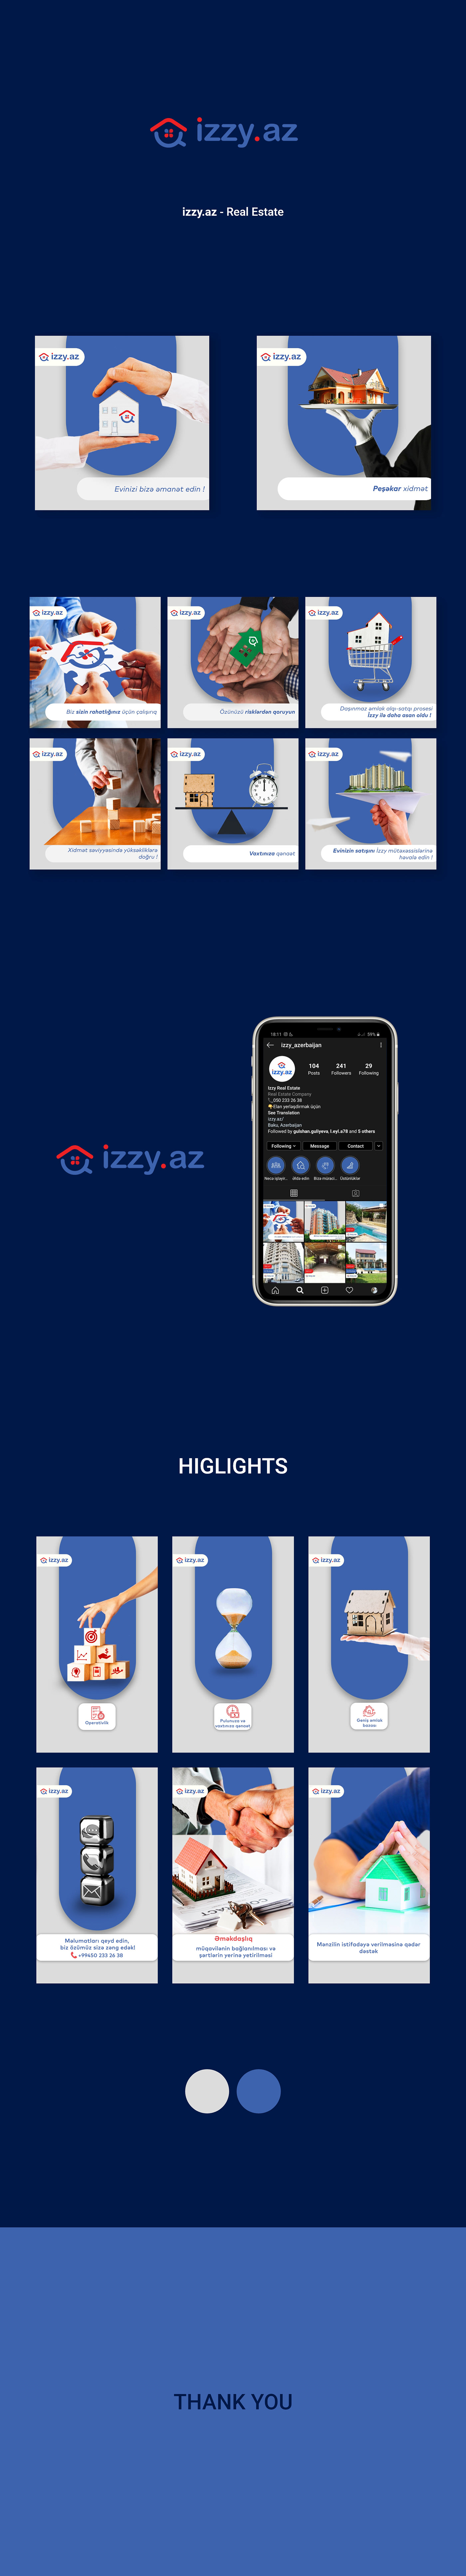 izzy.az / Social media on Behance